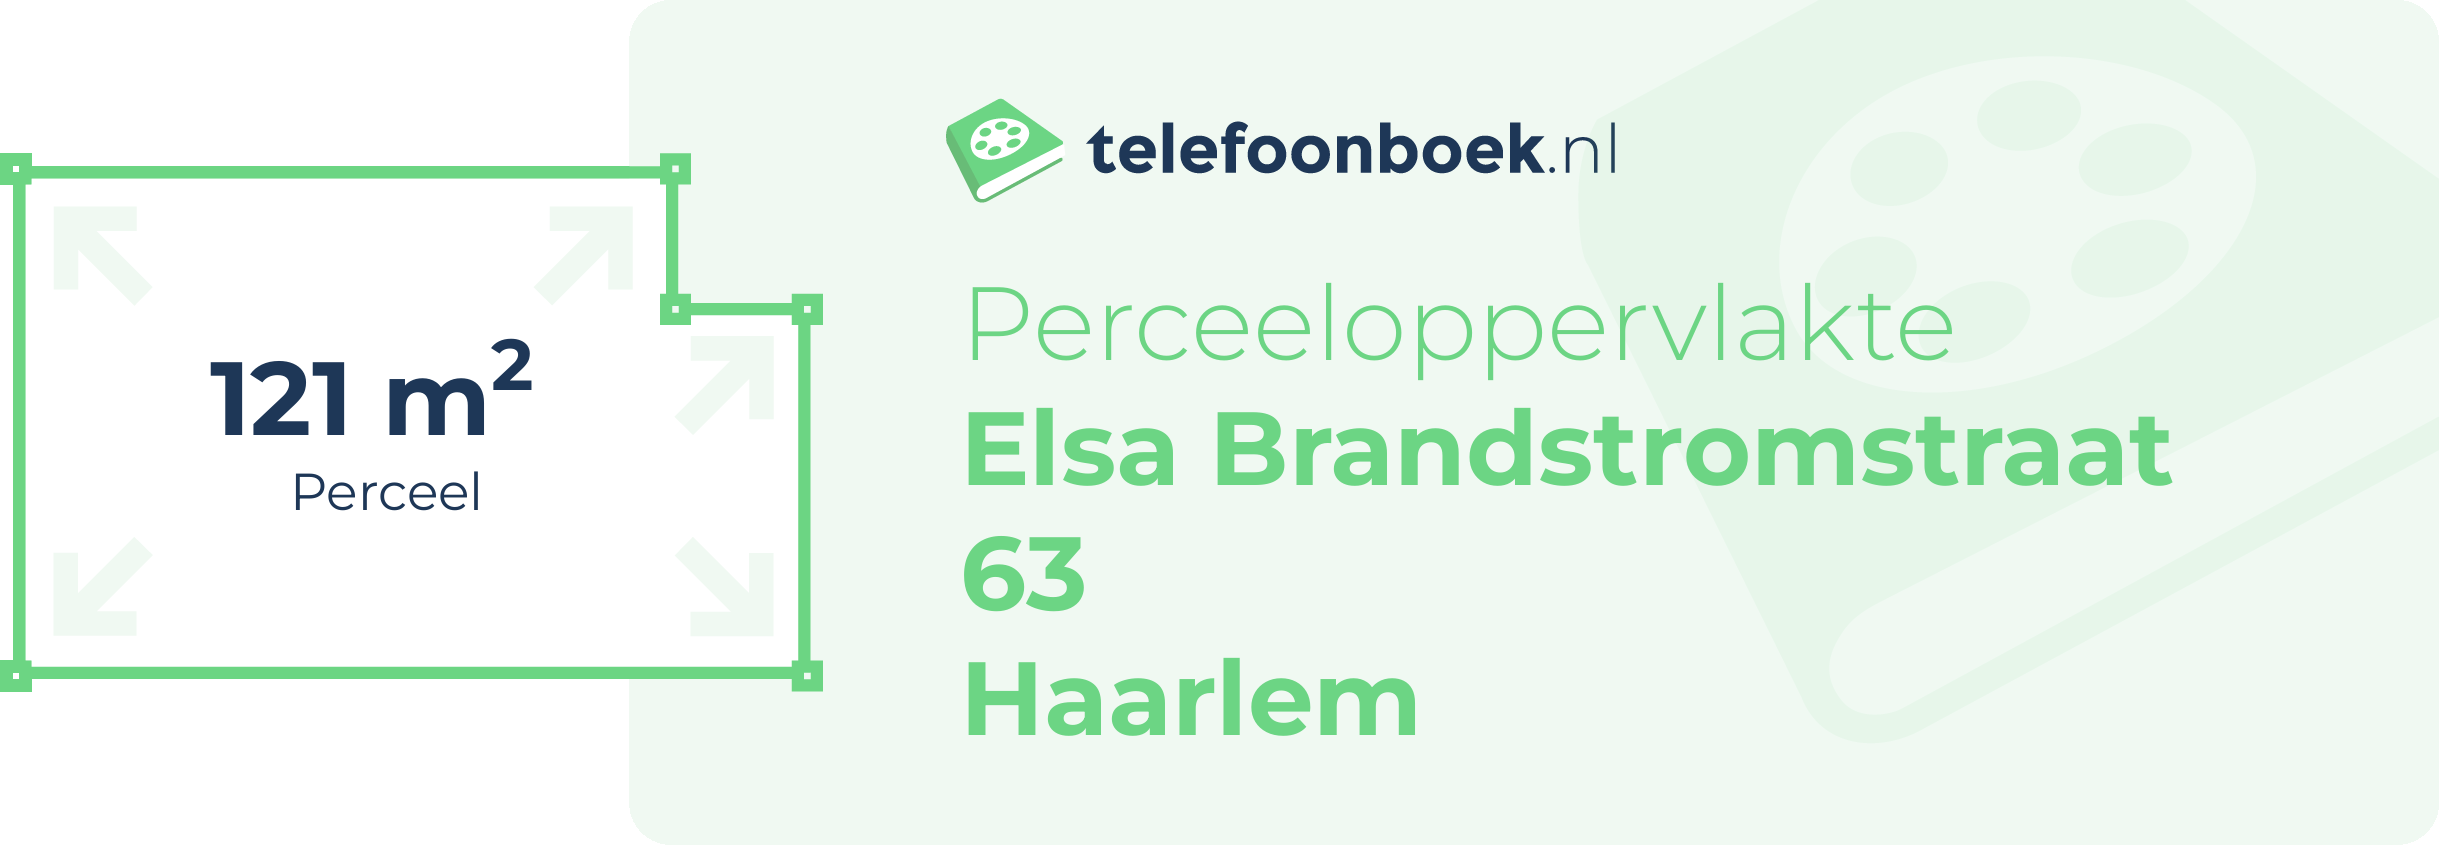 Perceeloppervlakte Elsa Brandstromstraat 63 Haarlem